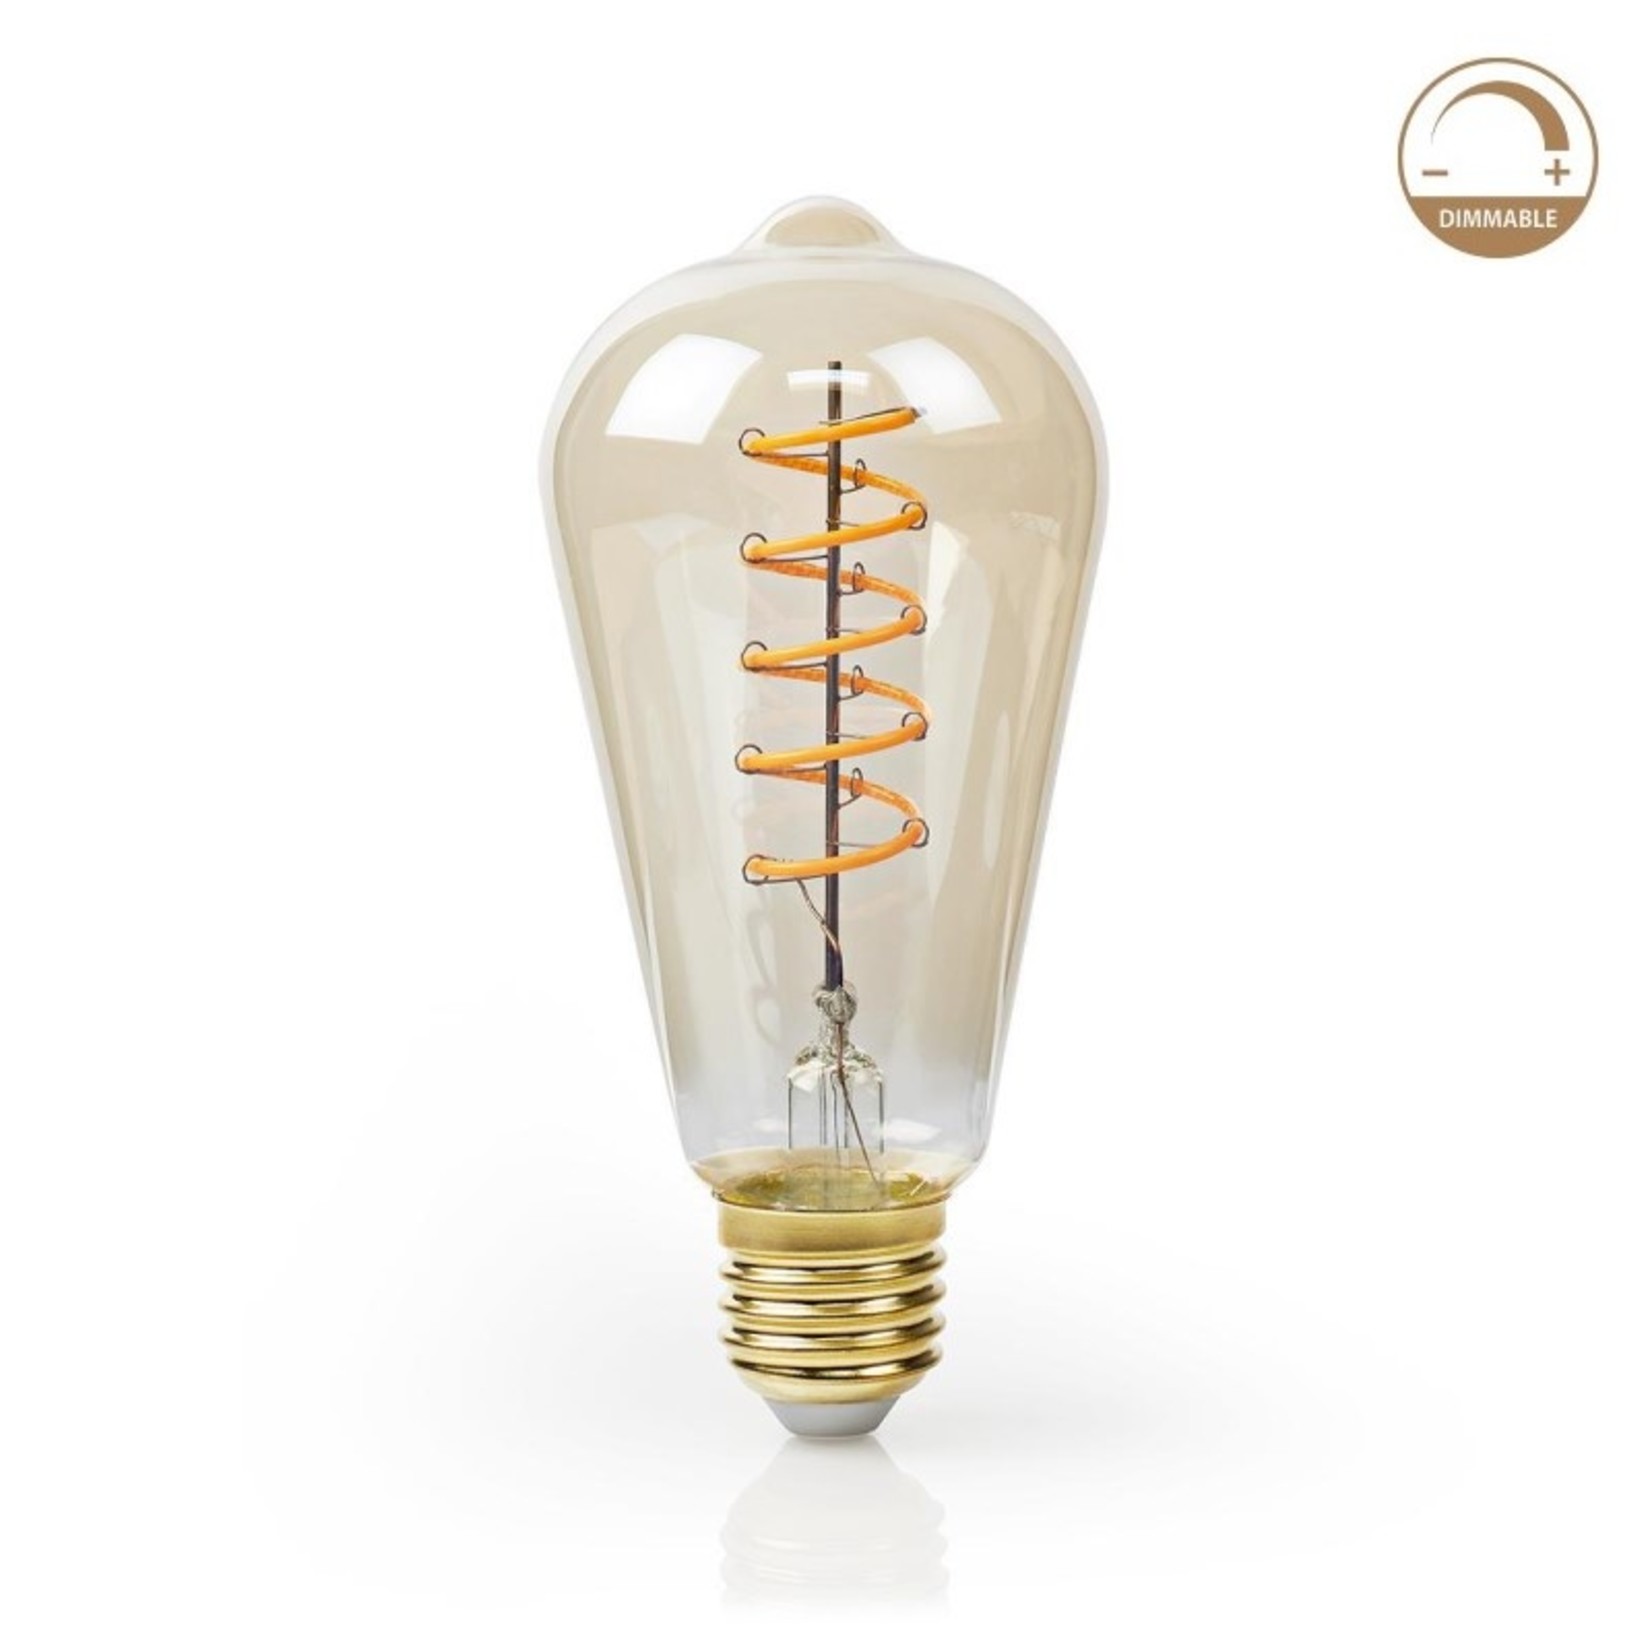 suspensie Groenten Van toepassing zijn Dimbare retro led lamp, model oude kooldraadlamp - LEDverlichtingsite.nl